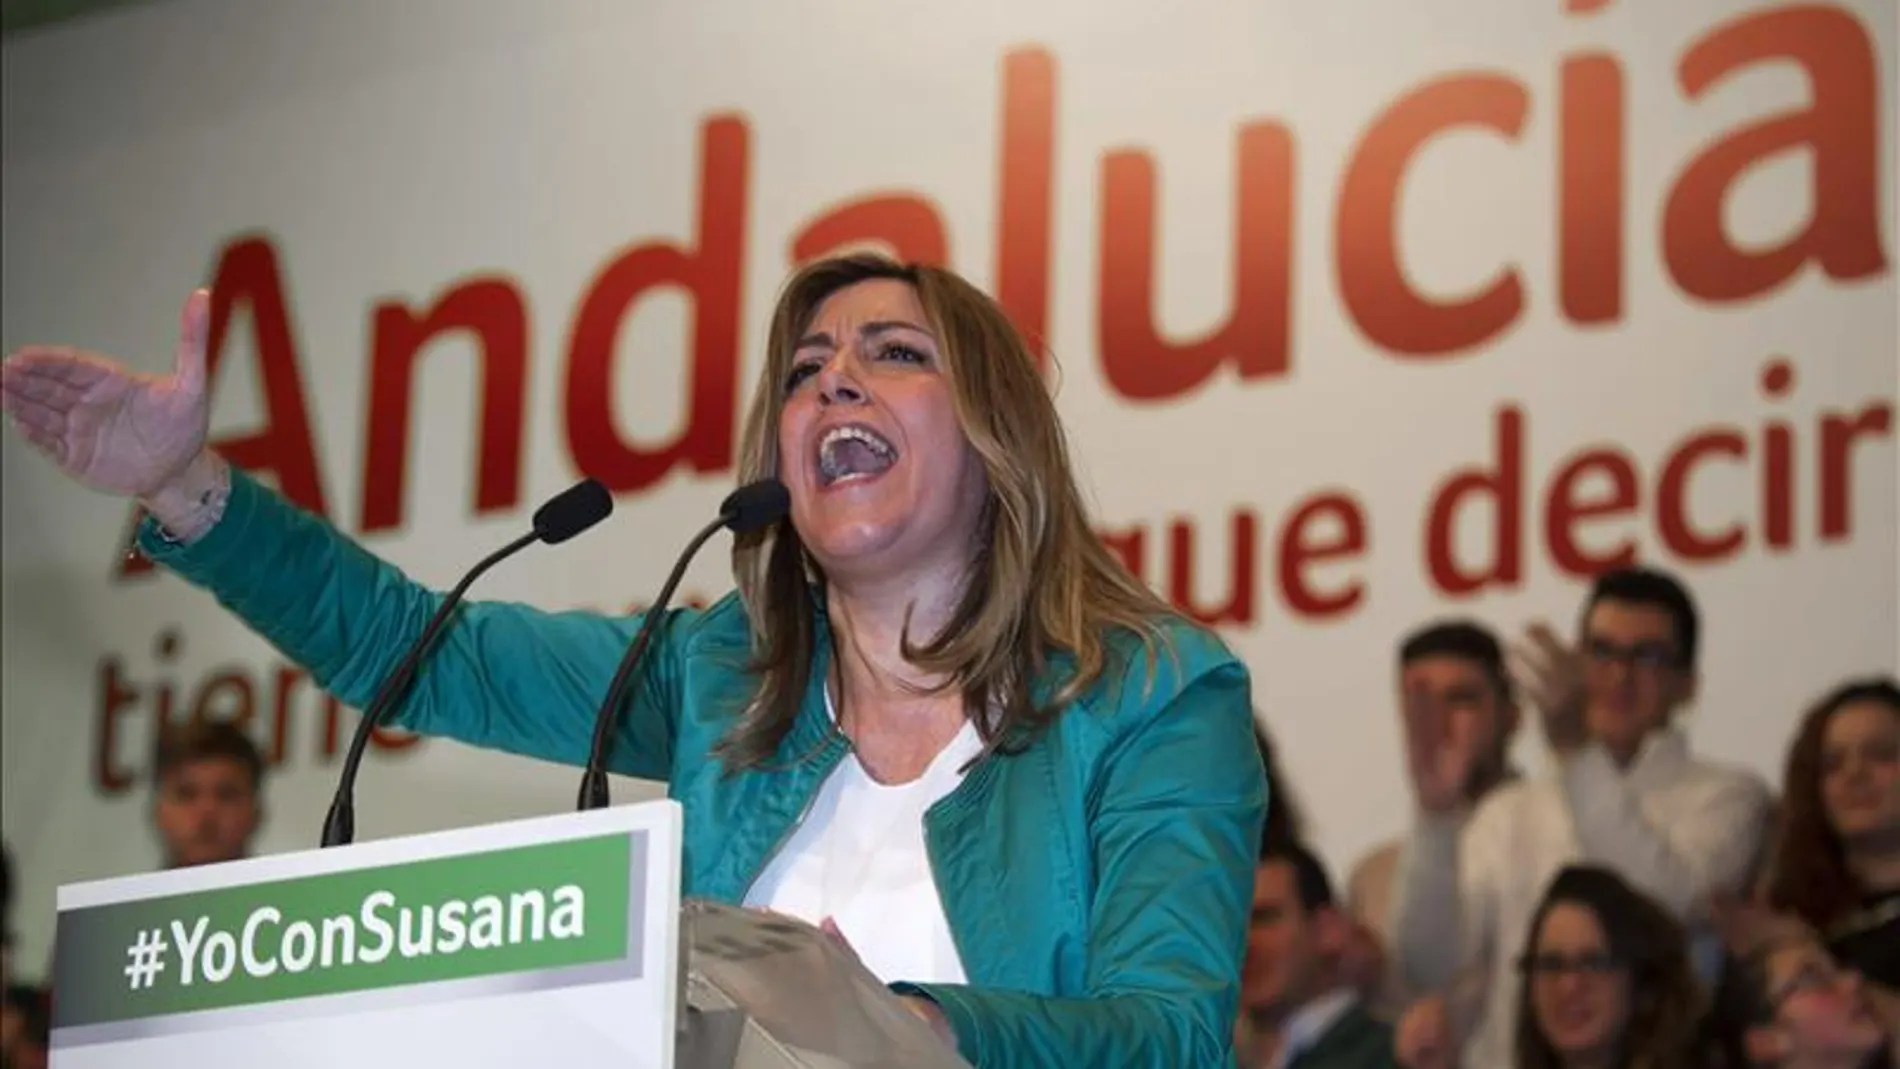 Susana Díaz, presidenta de Andalucía